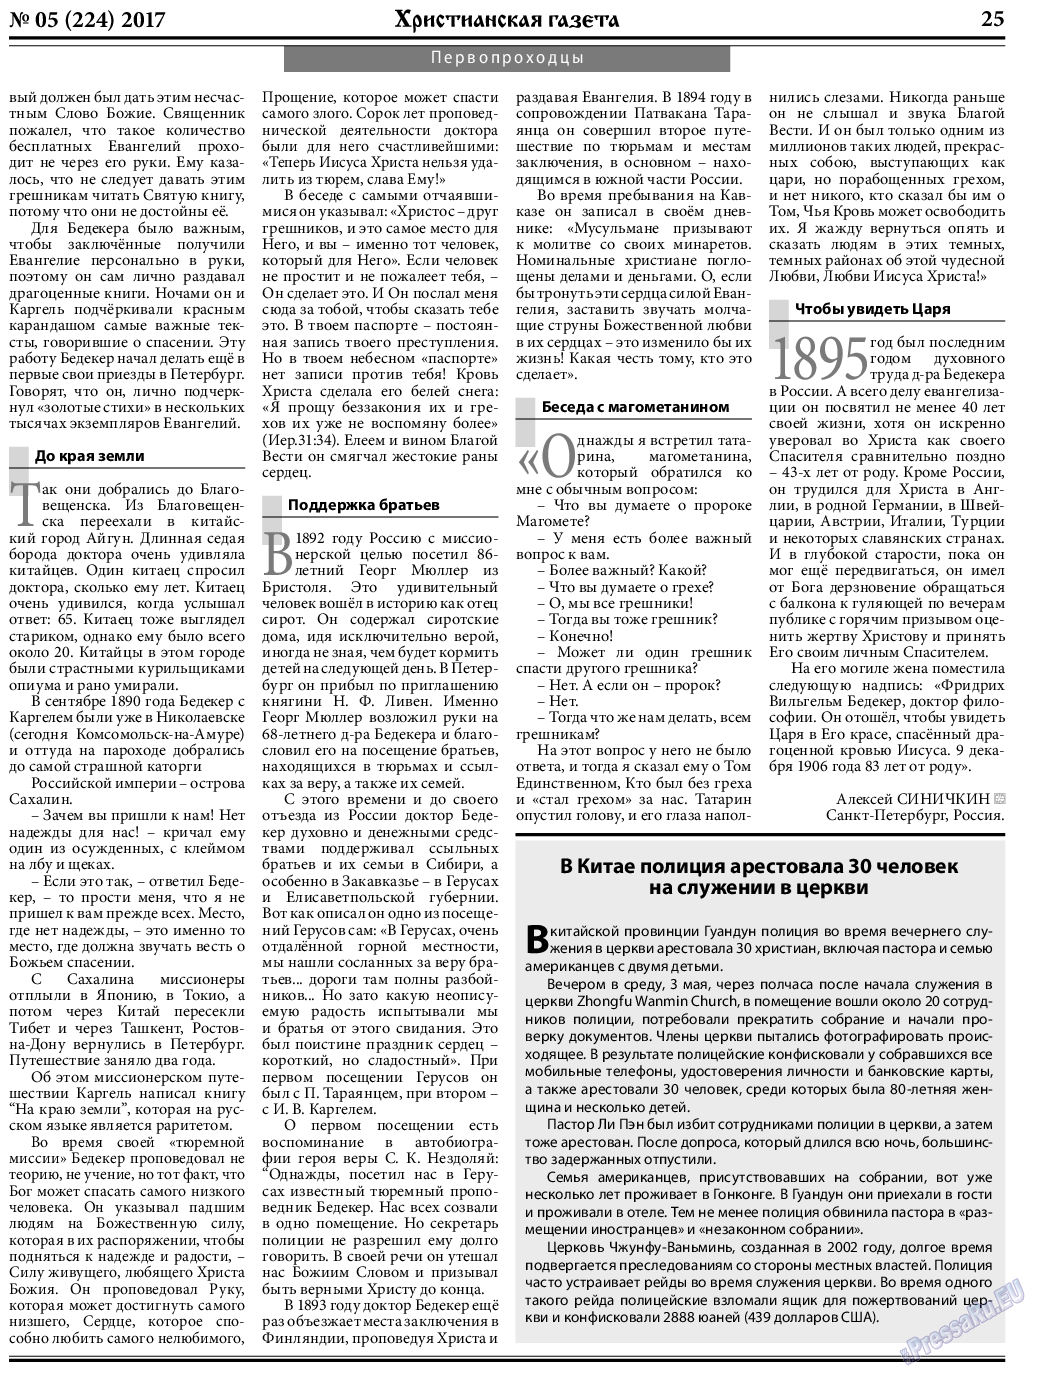 Христианская газета, газета. 2017 №5 стр.25